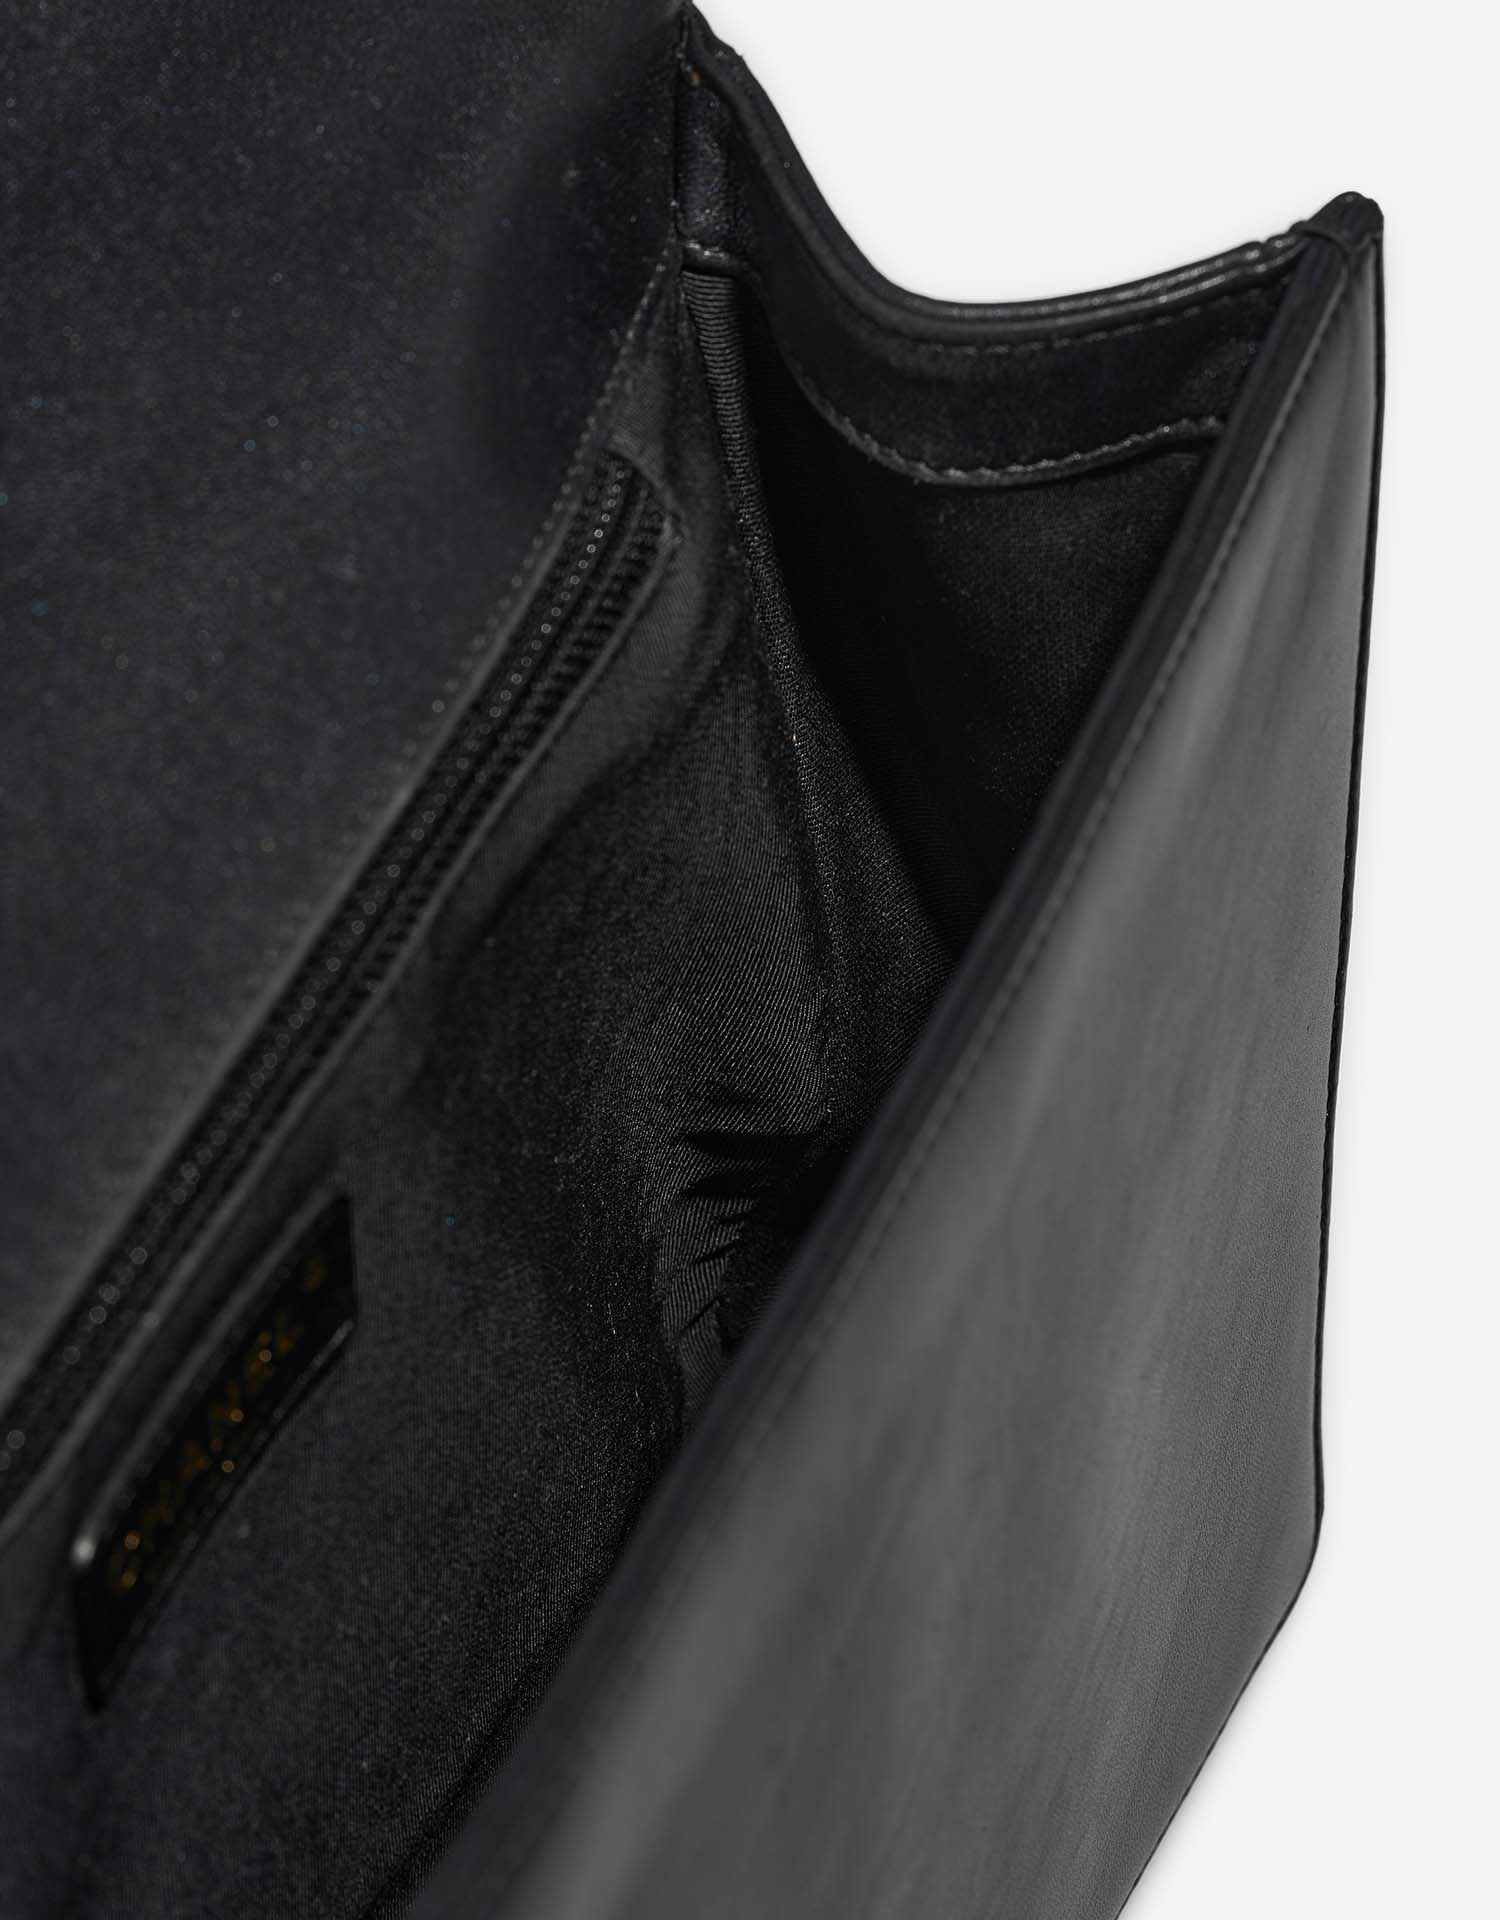 Chanel Boy Large Black Inside  | Sell your designer bag on Saclab.com